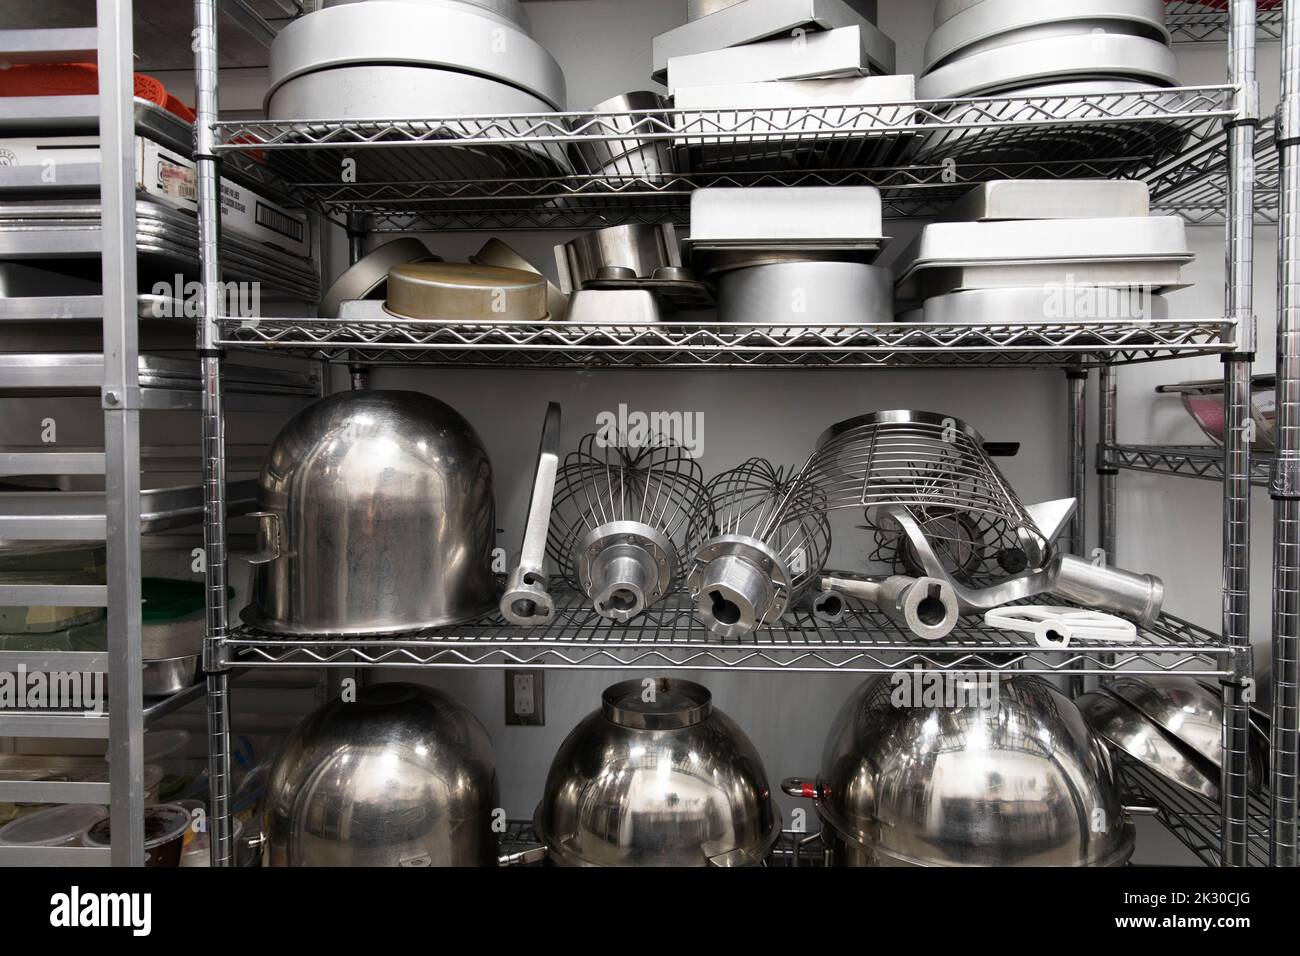 Restauration cuisine matériel de boulangerie gros plan Banque D'Images